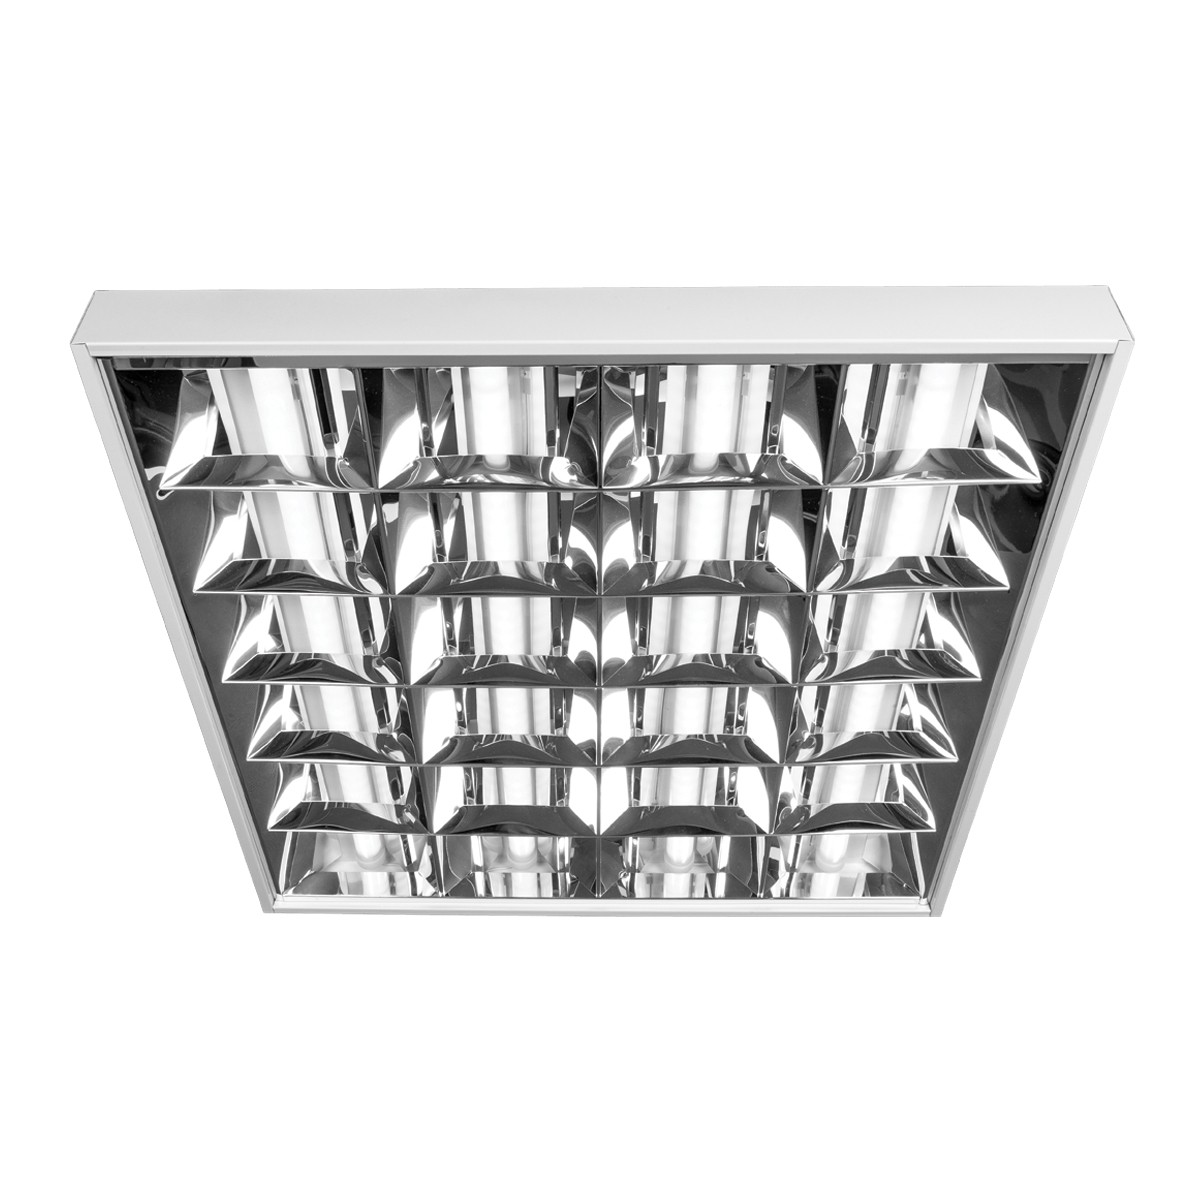 Φωτιστικό led πάνελ τετράγωνο με 5 διπλούς καθρέπτες, λευκό πλαίσιο, 46W, 3000K, 3.700lm, 900mA VK/04286/900/5/W/W